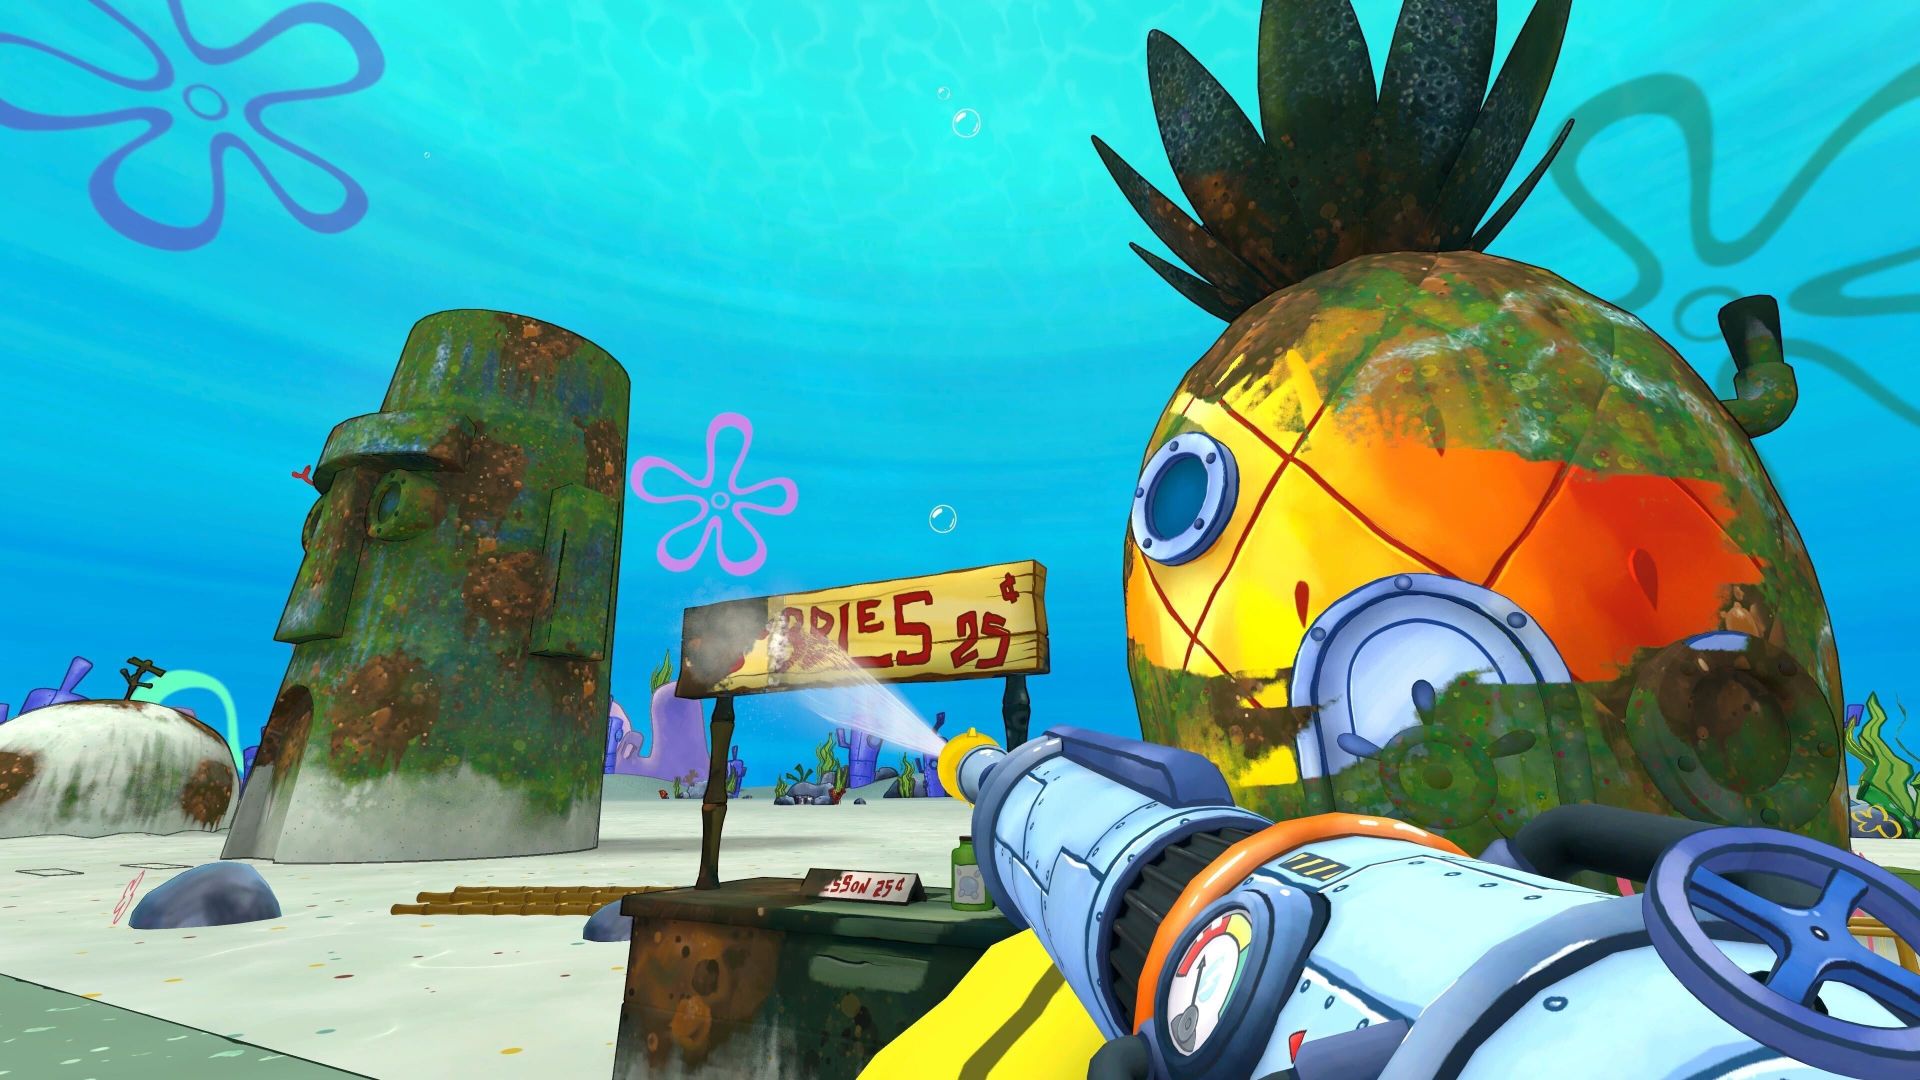 PowerWash Simulator - SpongeBob SquarePants Special Pack Screenshot